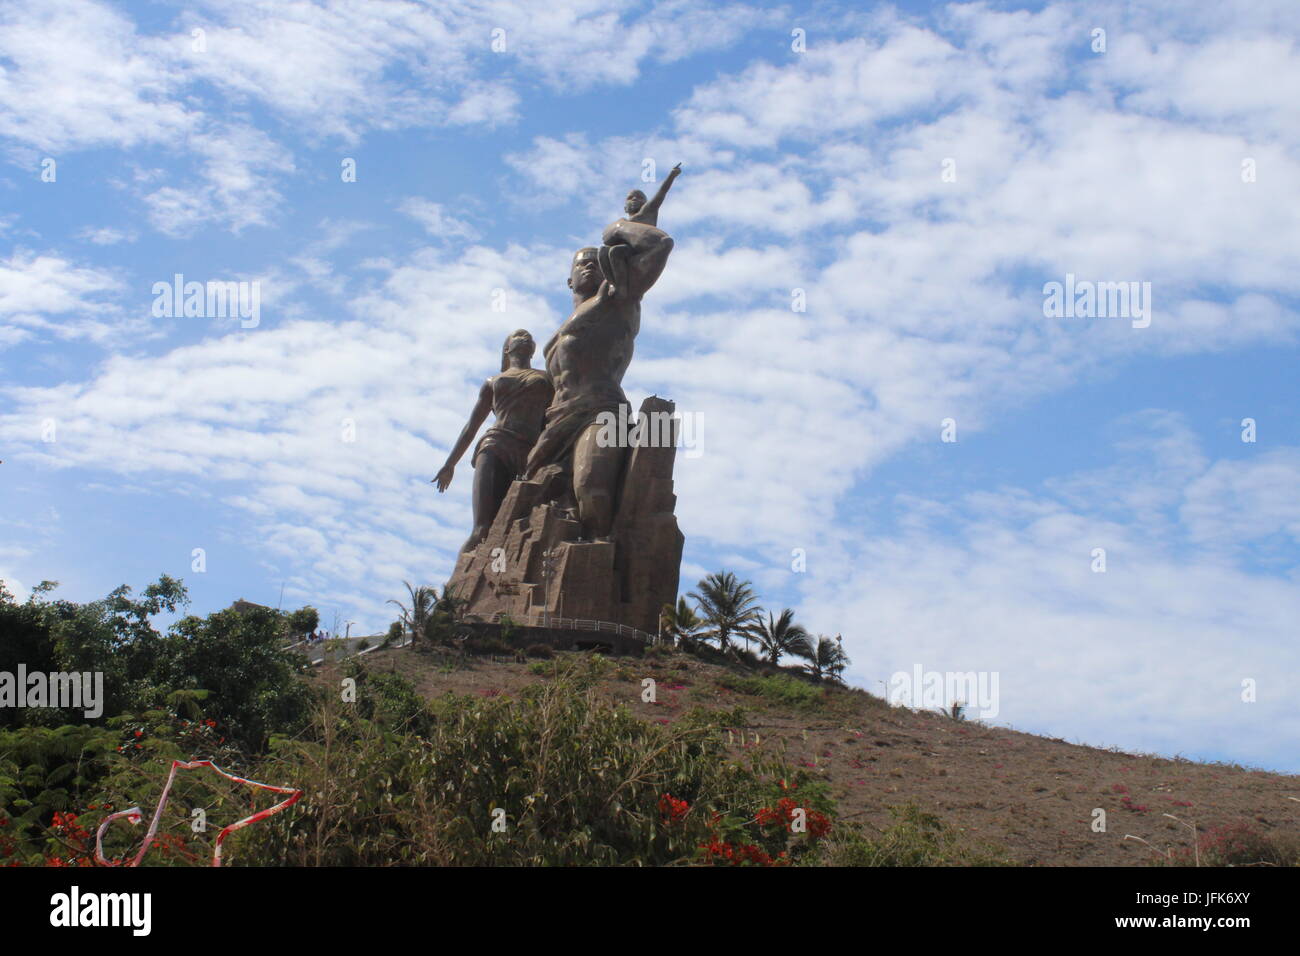 Le Monument de la Renaissance africaine, le Monument de la Renaissance africaine, Dakar Sénégal Banque D'Images